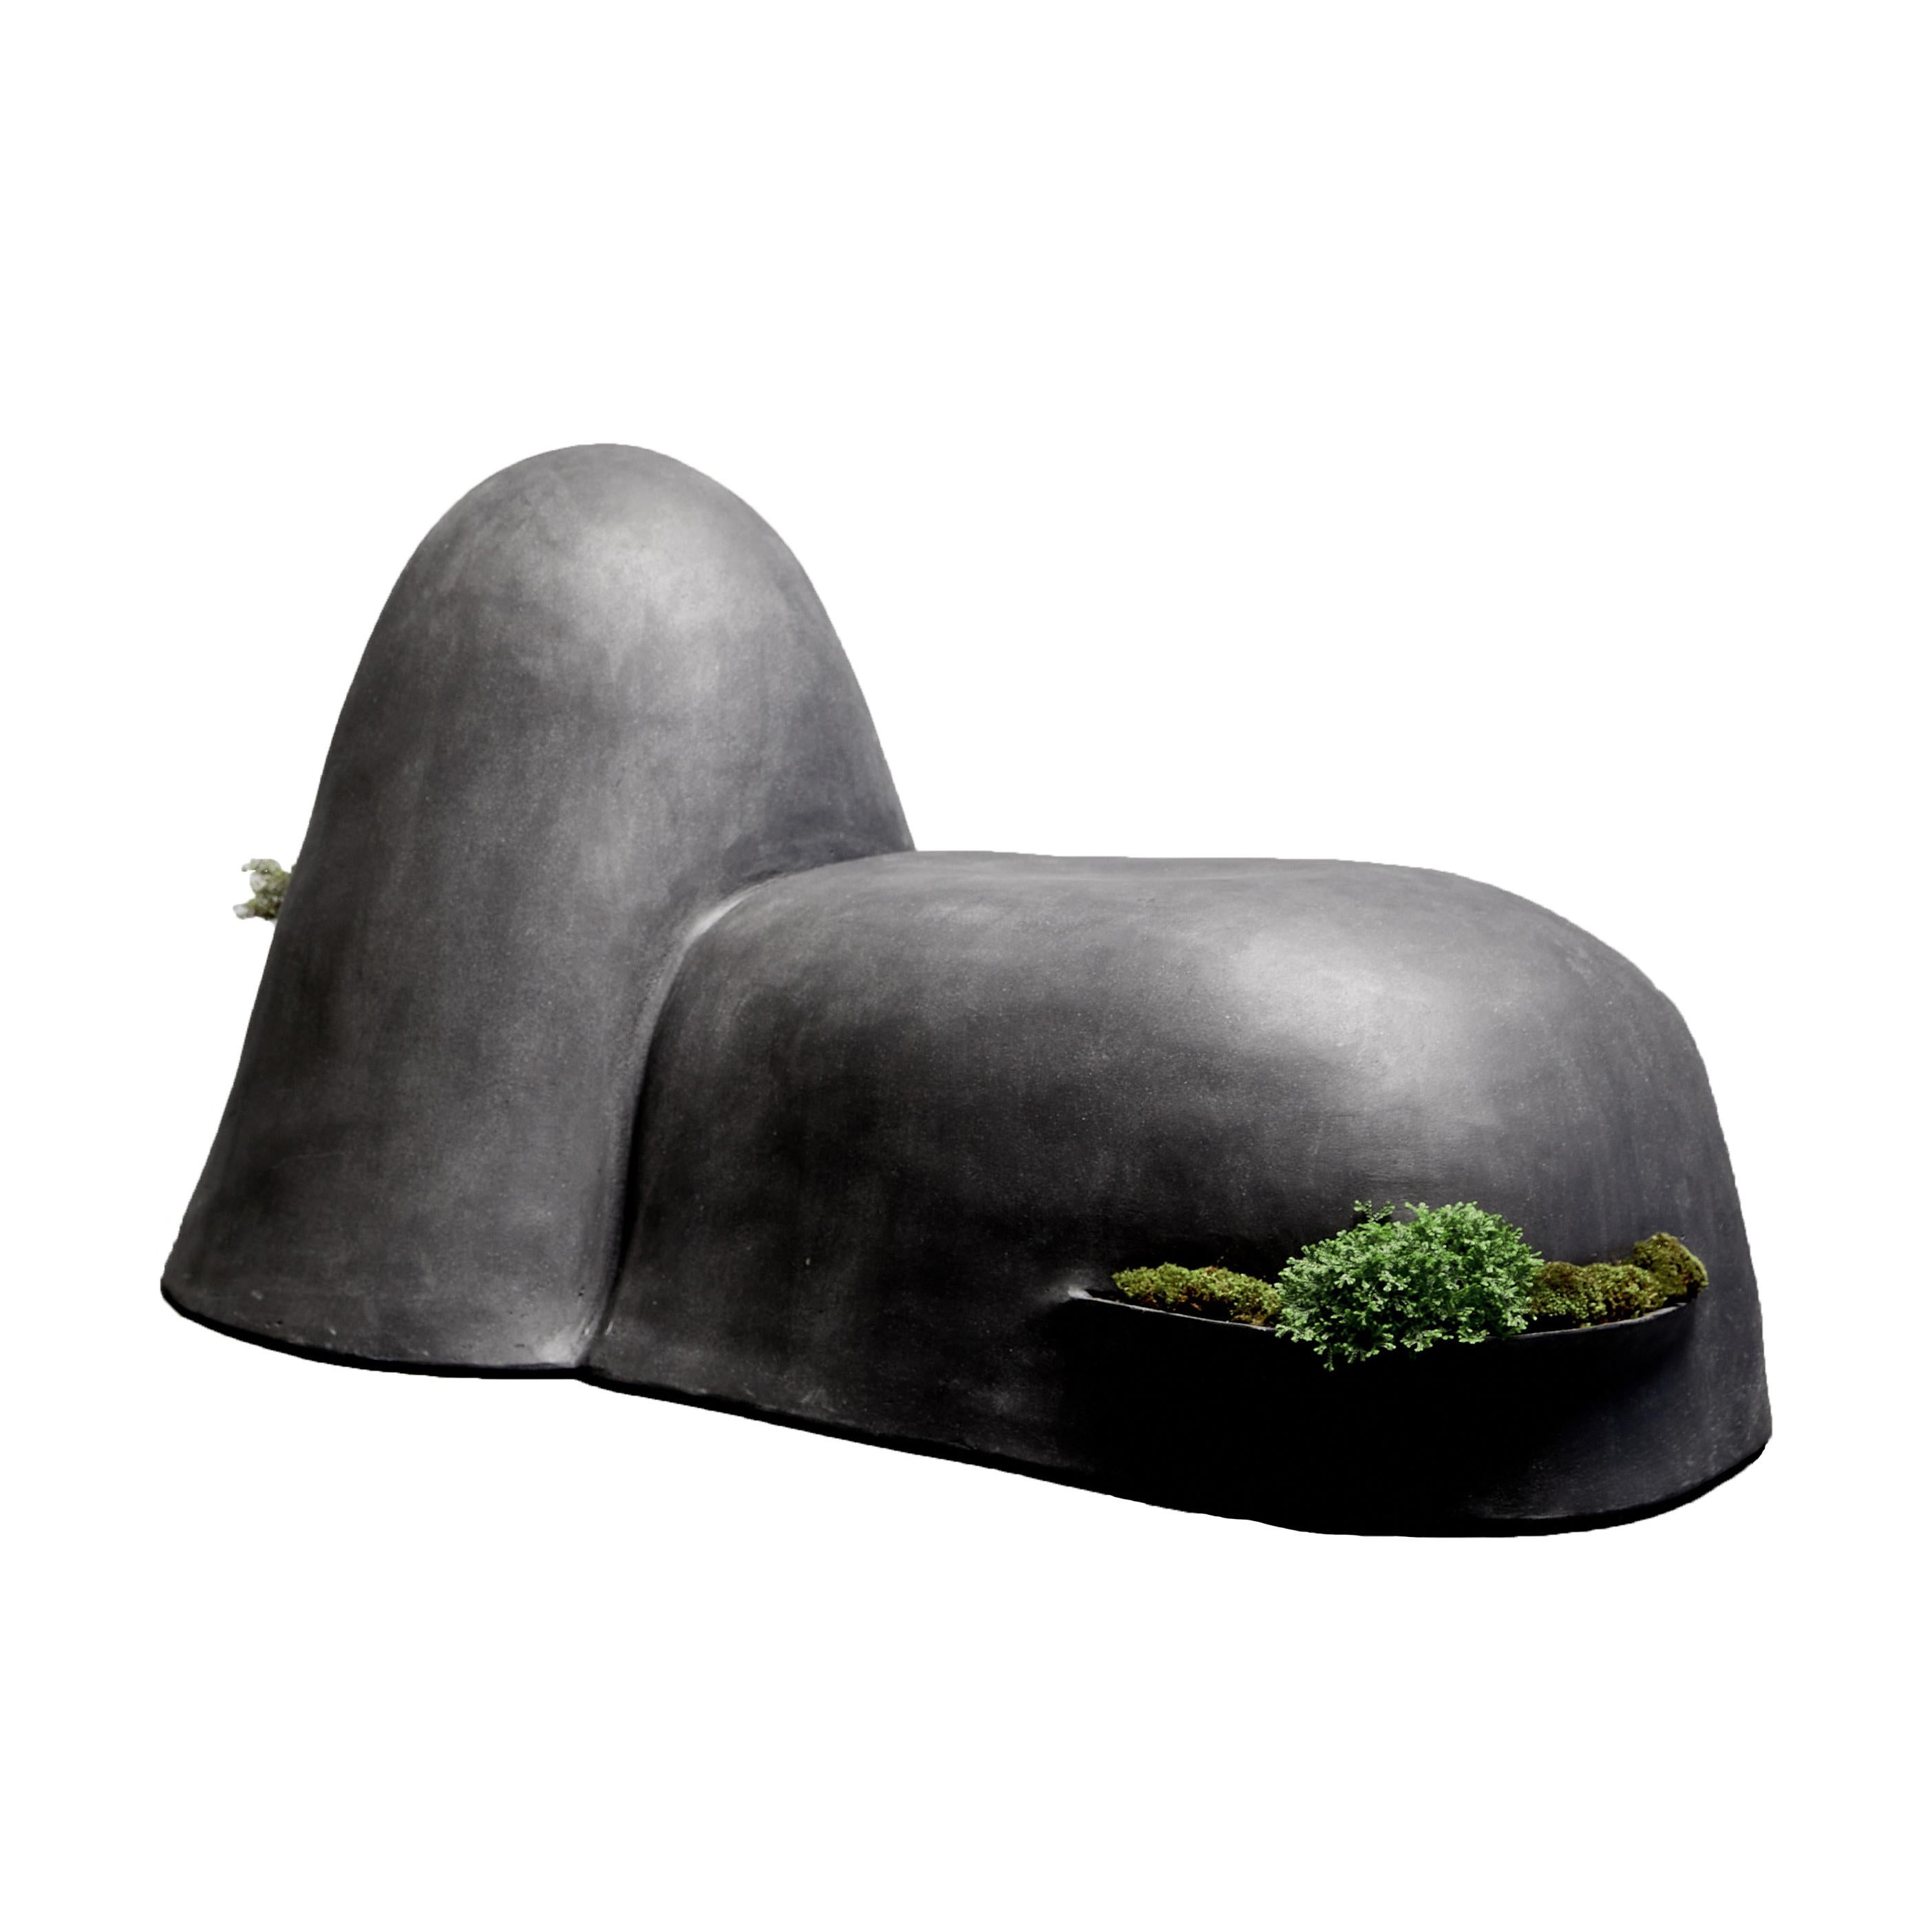 Soy Una Roca ist eine elegante Möglichkeit, Natur und Skulpturen in Ihren Raum zu bringen. Wie alle Produkte von Opiary werden auch diese in unserem Studio in Brooklyn von Hand geformt und sind vollständig anpassbar. 

DETAILS
Einzelverkauf. Maße: